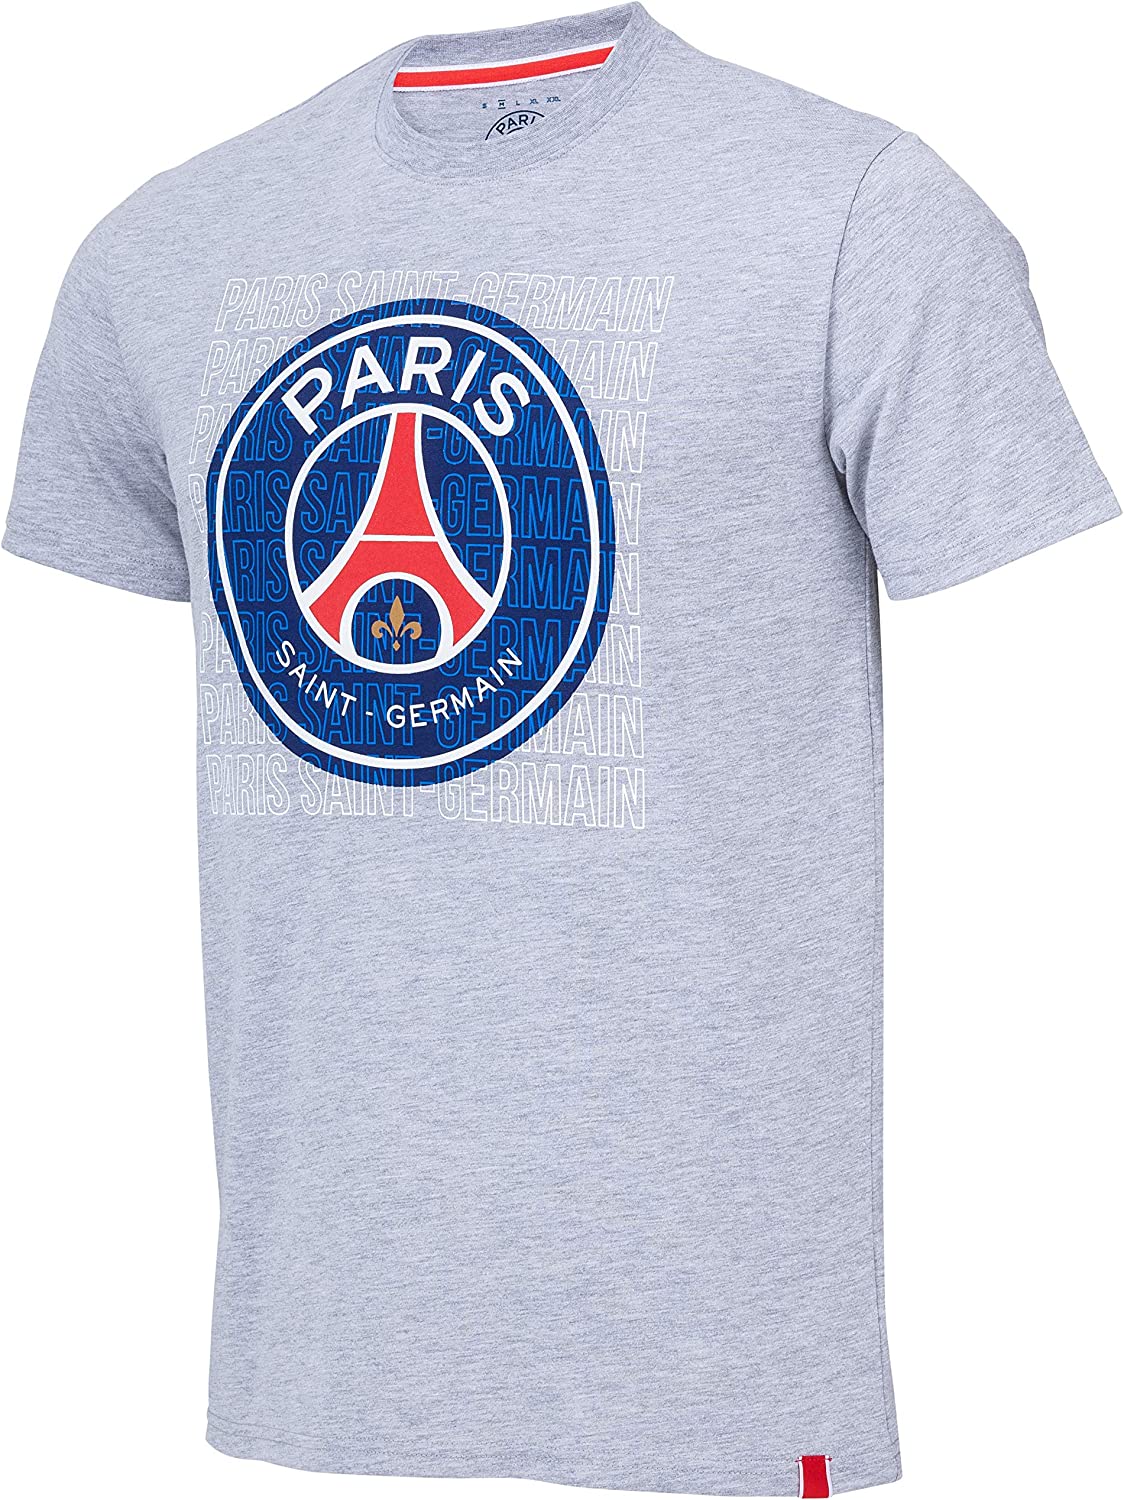 Paris Saint Germain FC - PSG tričko šedé pánske - SKLADOM